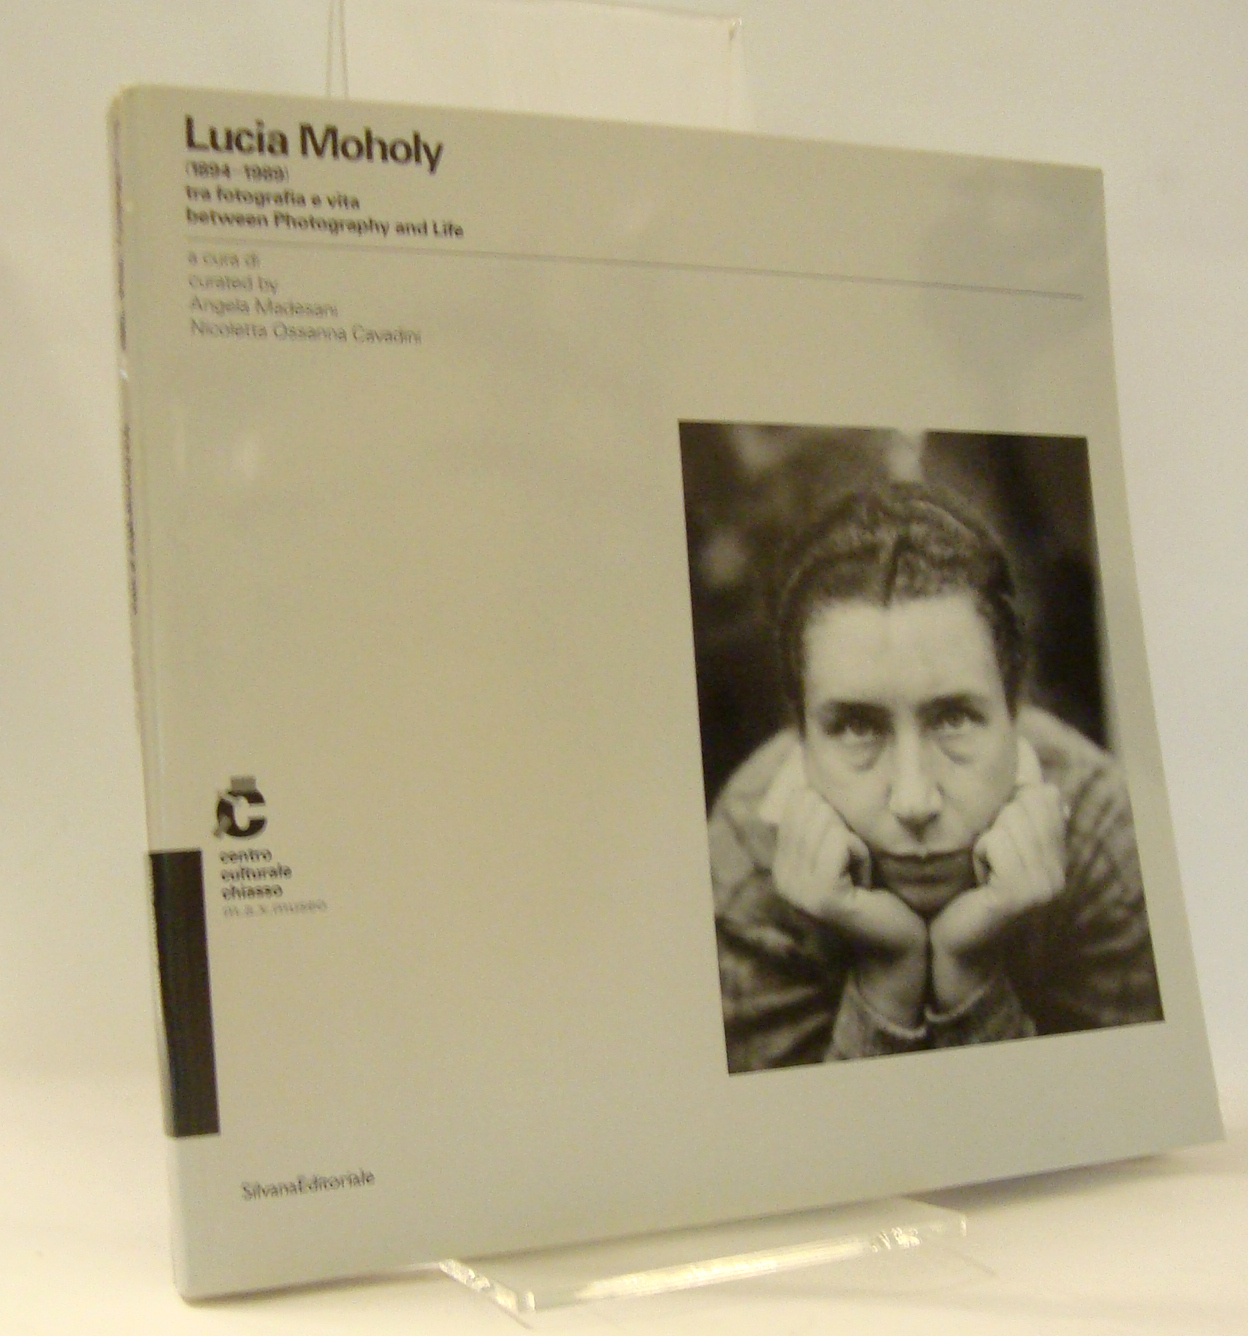 Lucia Moholy 1894-1989. tra fotografia e vita. between Photography and Life. - Madesani, Angela u. Ossanna Cavadini, Nicoletta (Hrsg.)